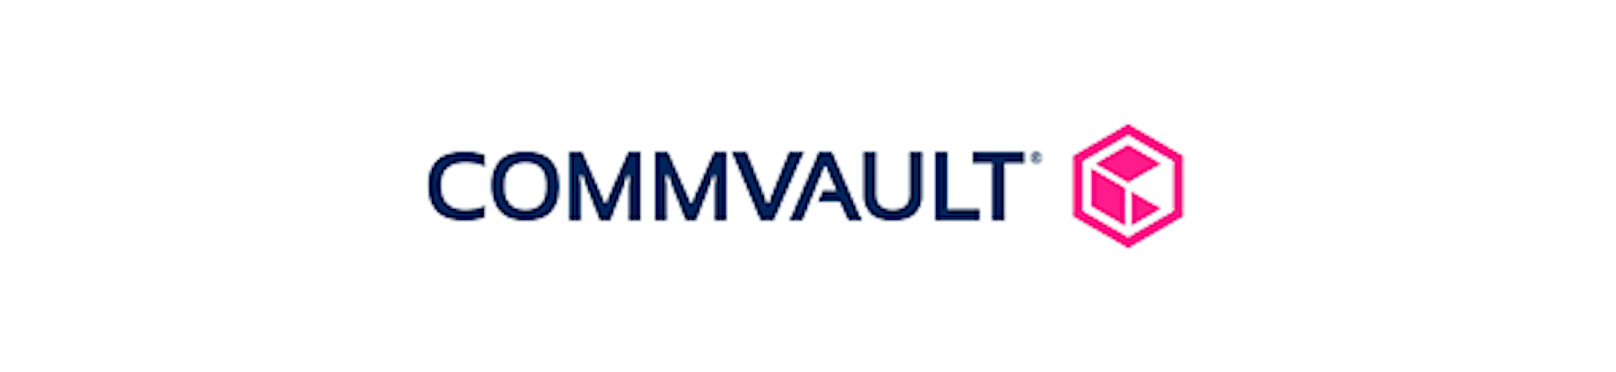 Commvault präsentiert neue Version der Commvault Platform.